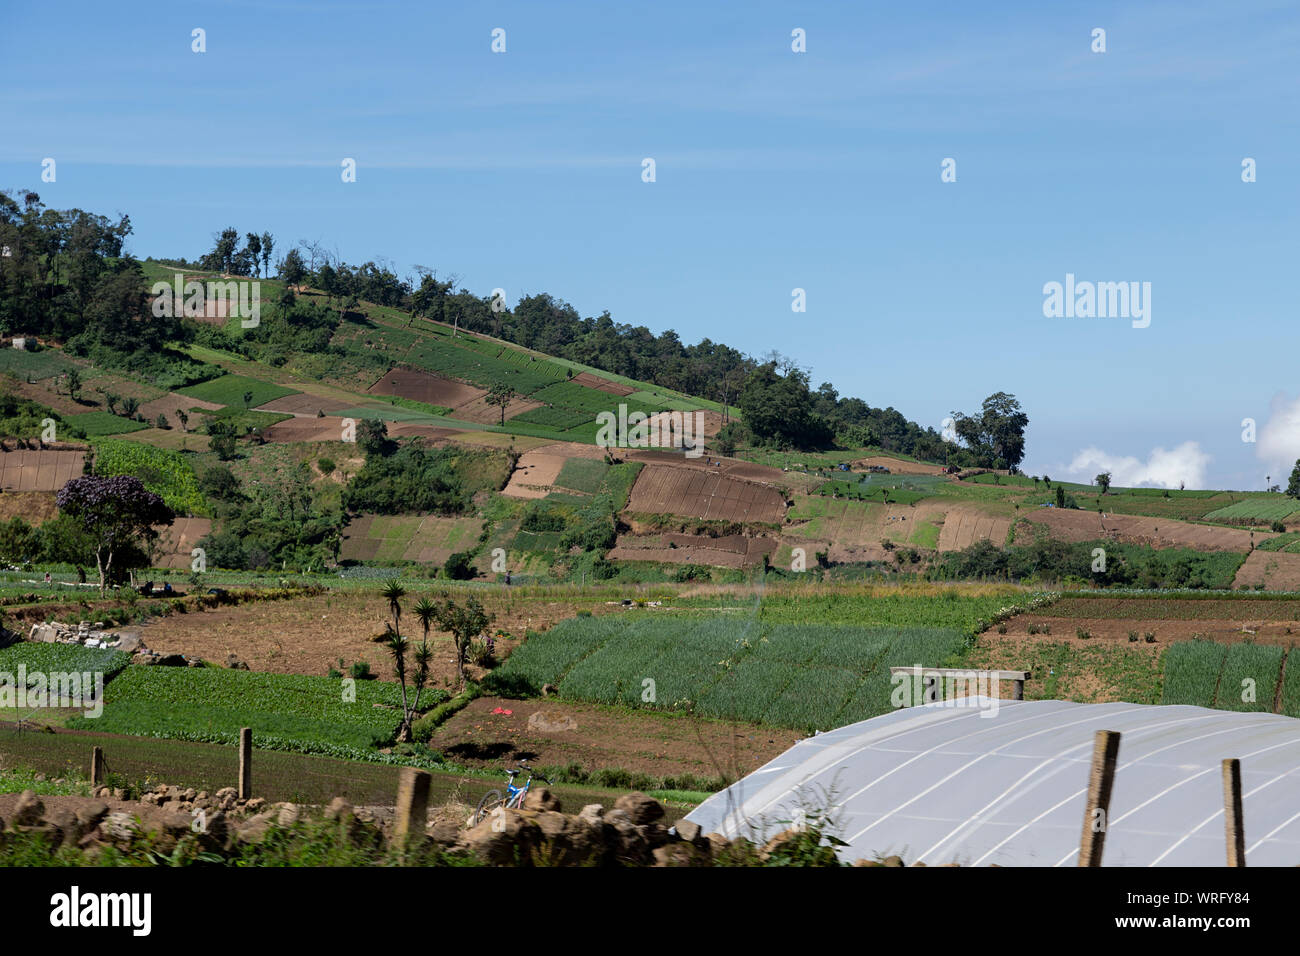 Paisaje rural de campos de agricultura vegetal en Guatemala Foto de stock